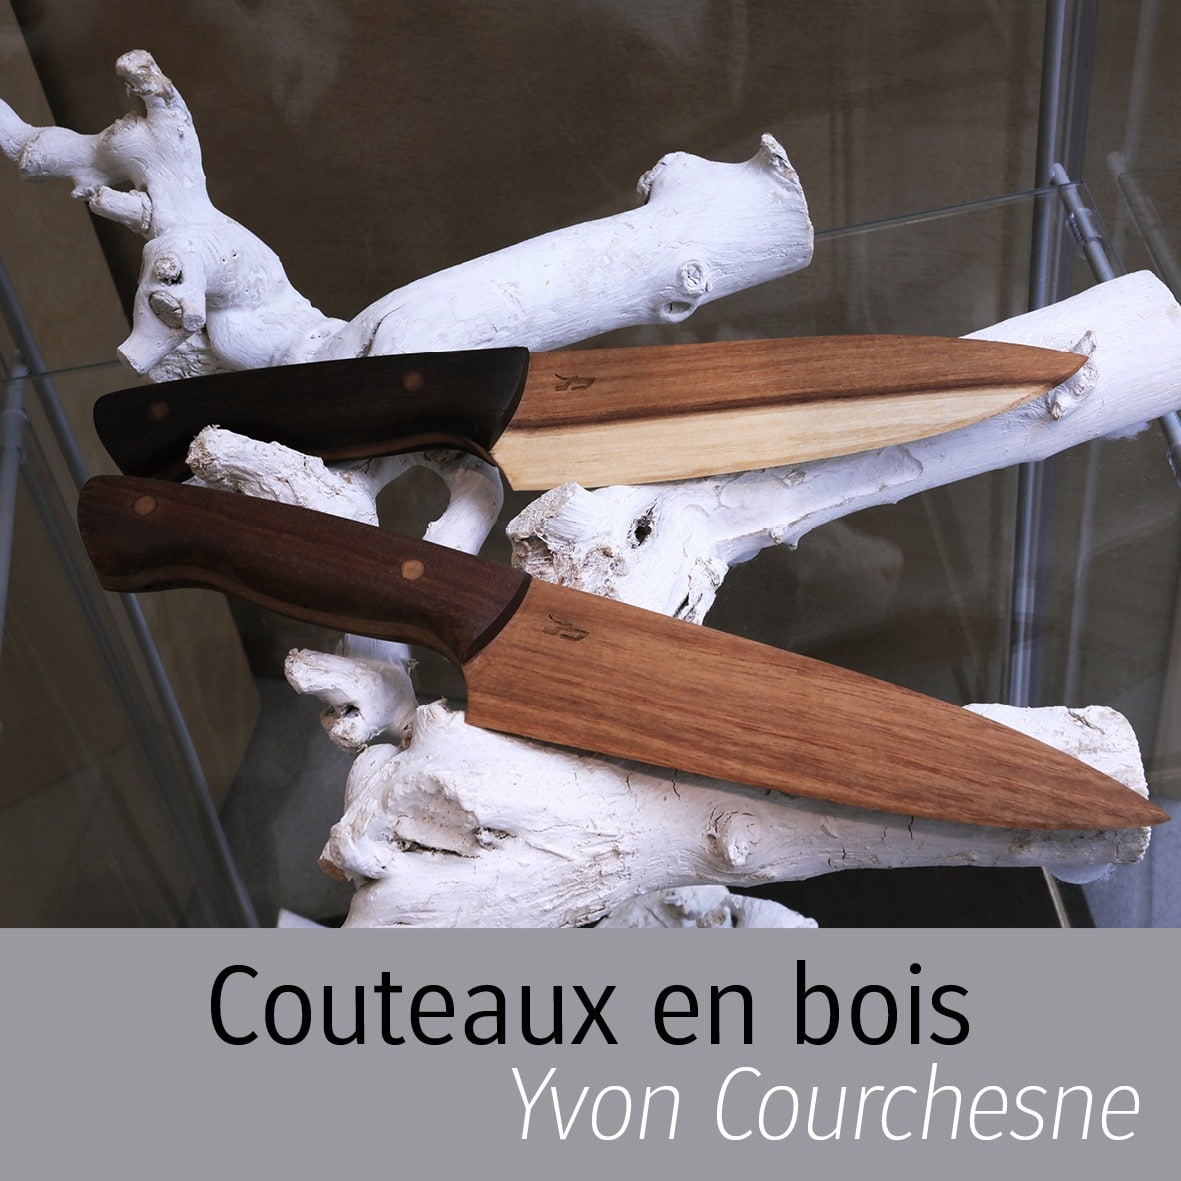 Couteaux en bois Yvon Courchesne